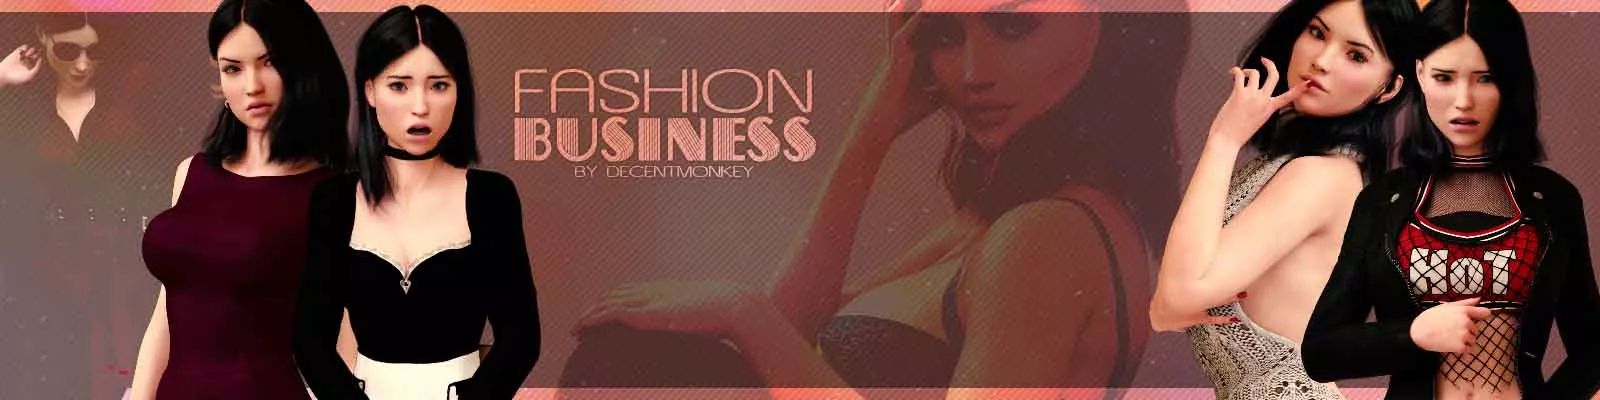 Fashion Business 3d sexspil, pornospil, voksenspil